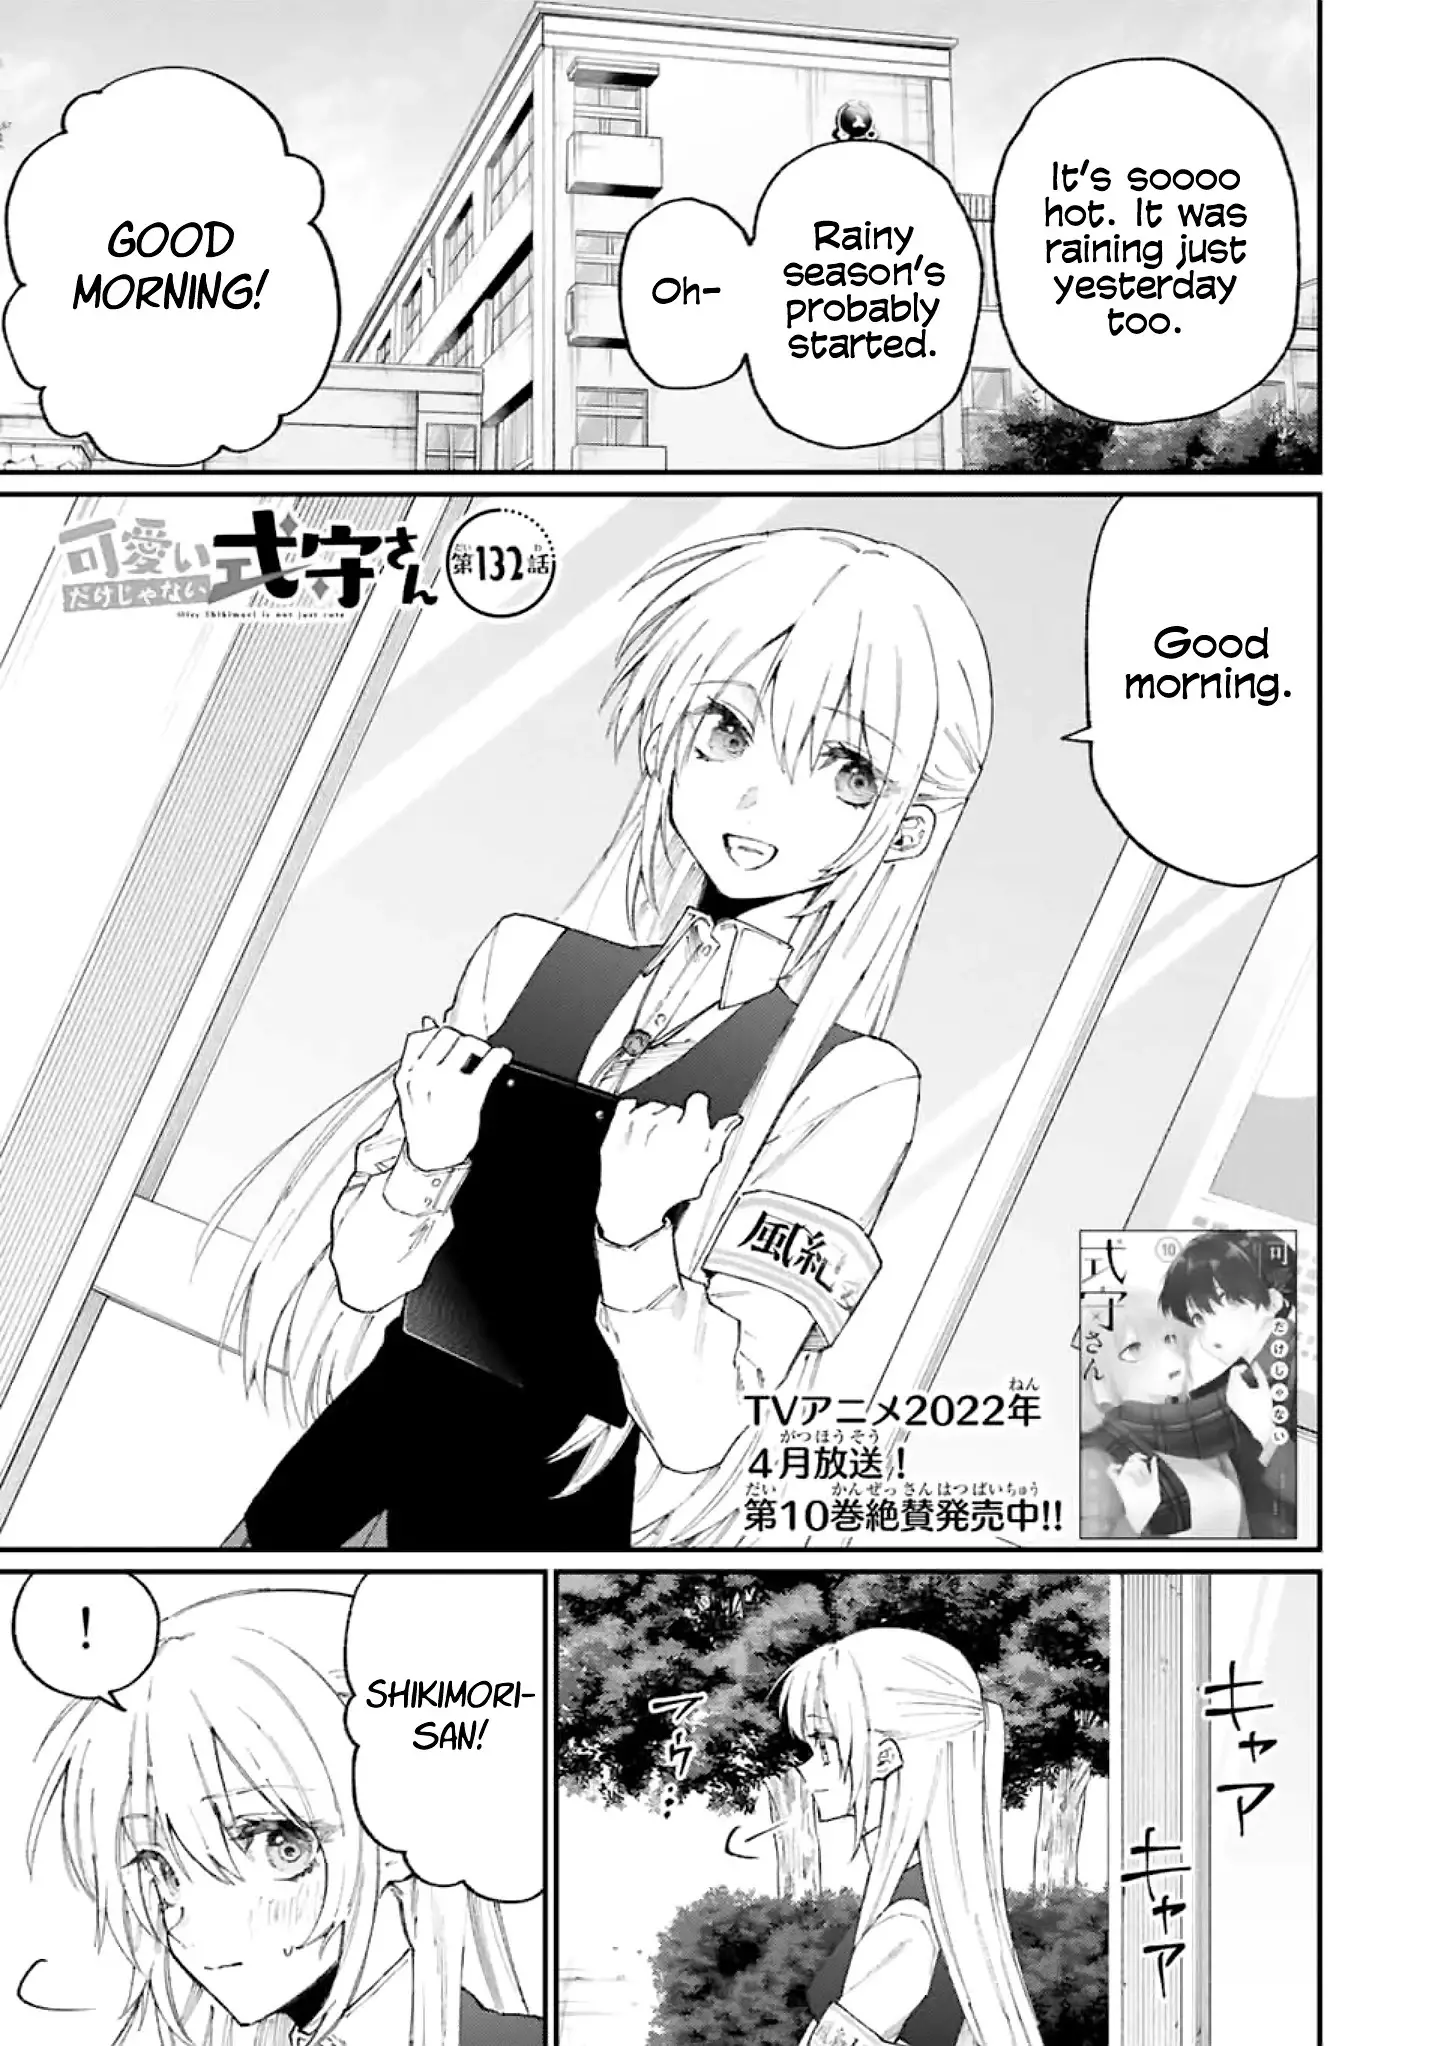 Shikimori's Not Just A Cutie - 132 page 1